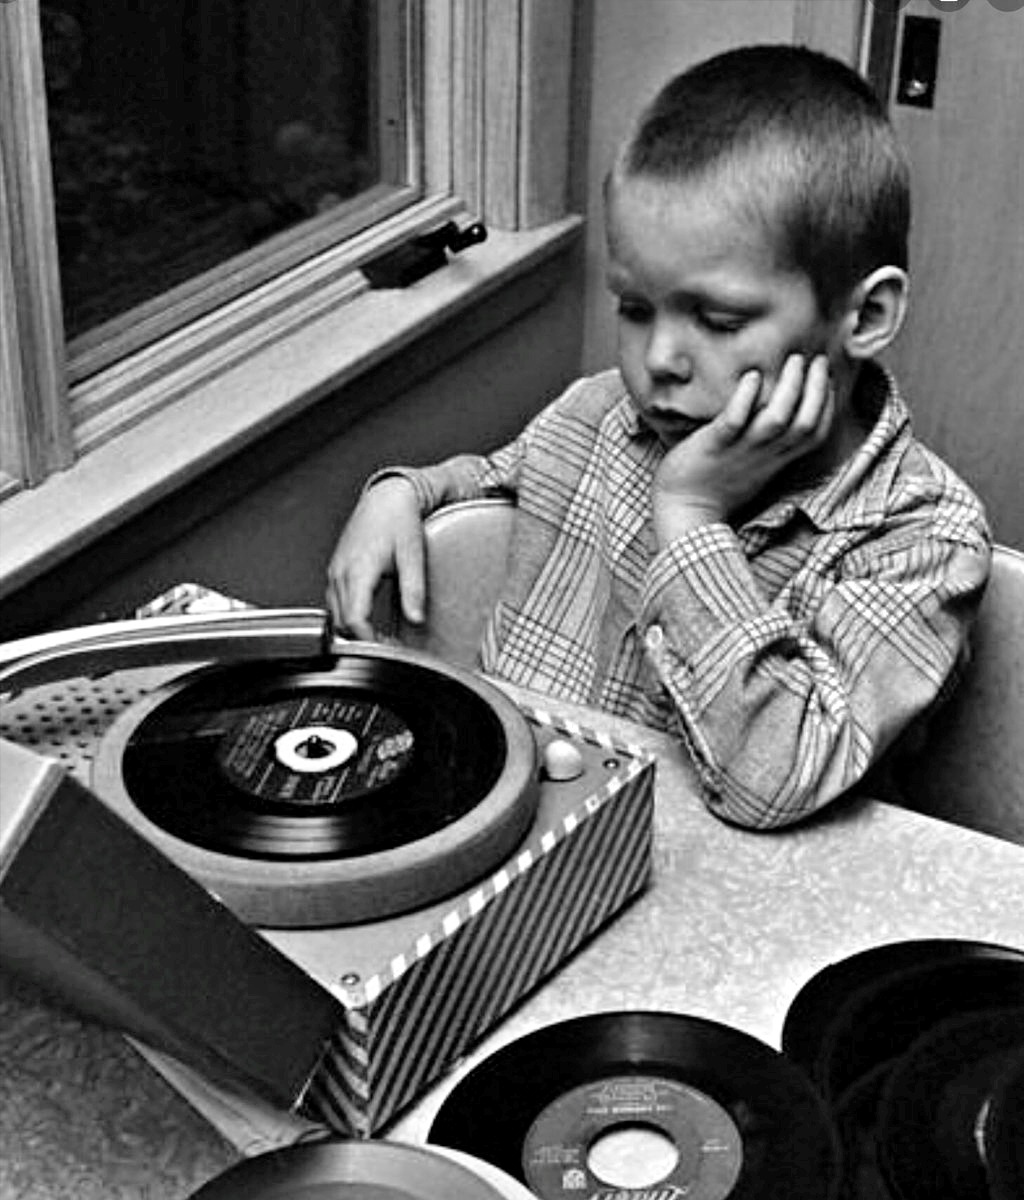 vinylespassion:“ H. Armstrong Roberts, 1970s.”Le buone abitudini, fin da sempre